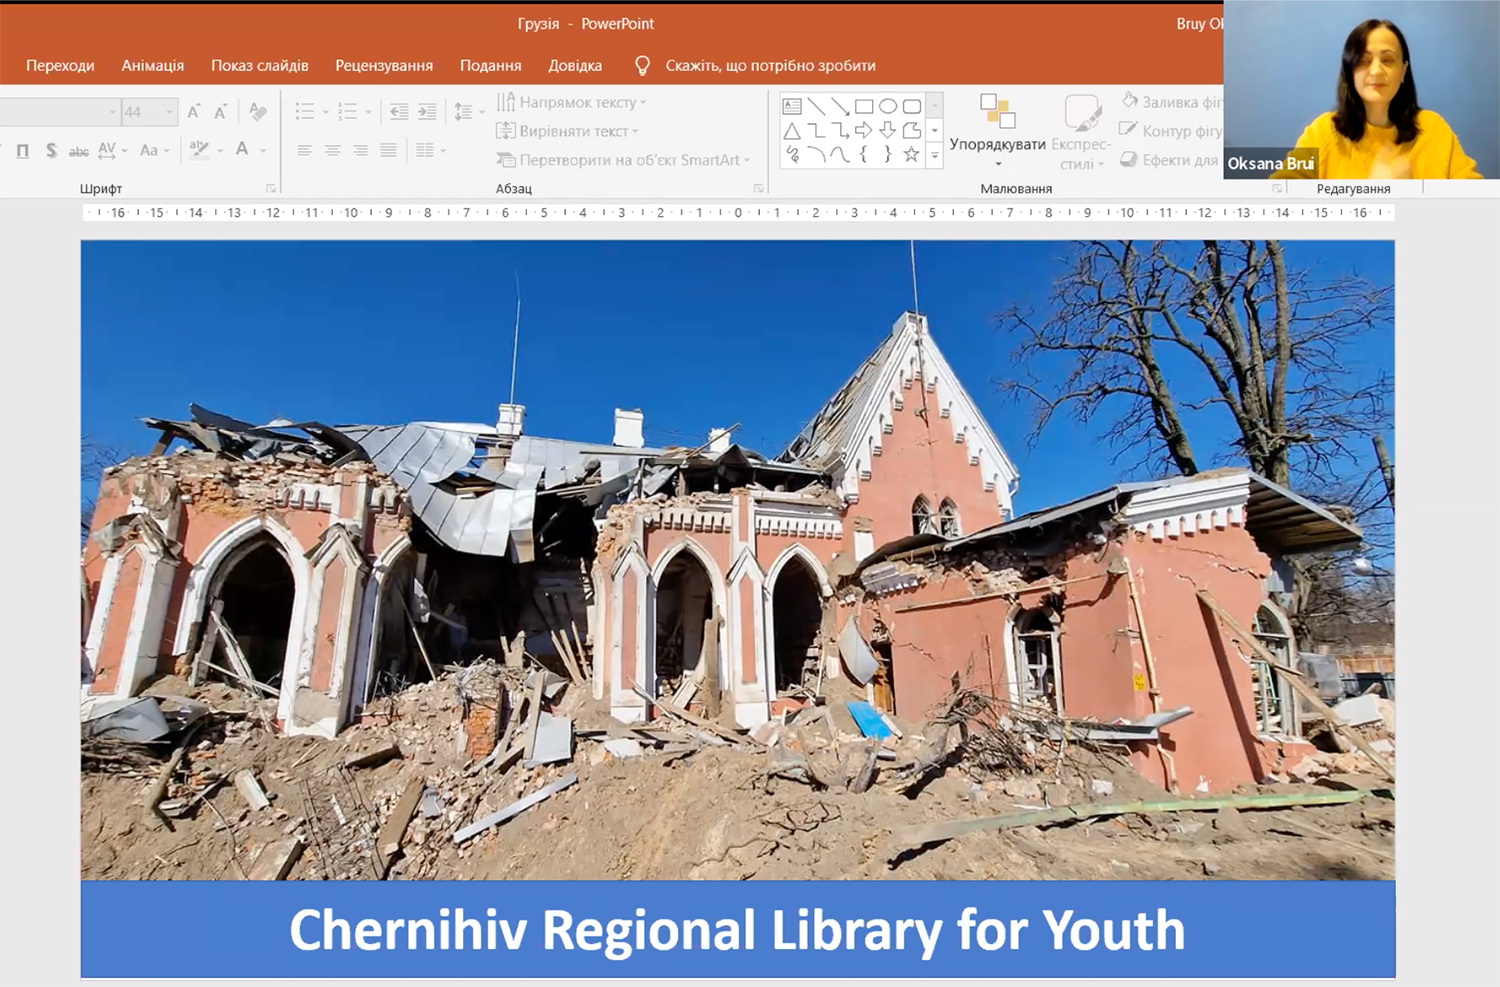 Library destruction in Ukraine